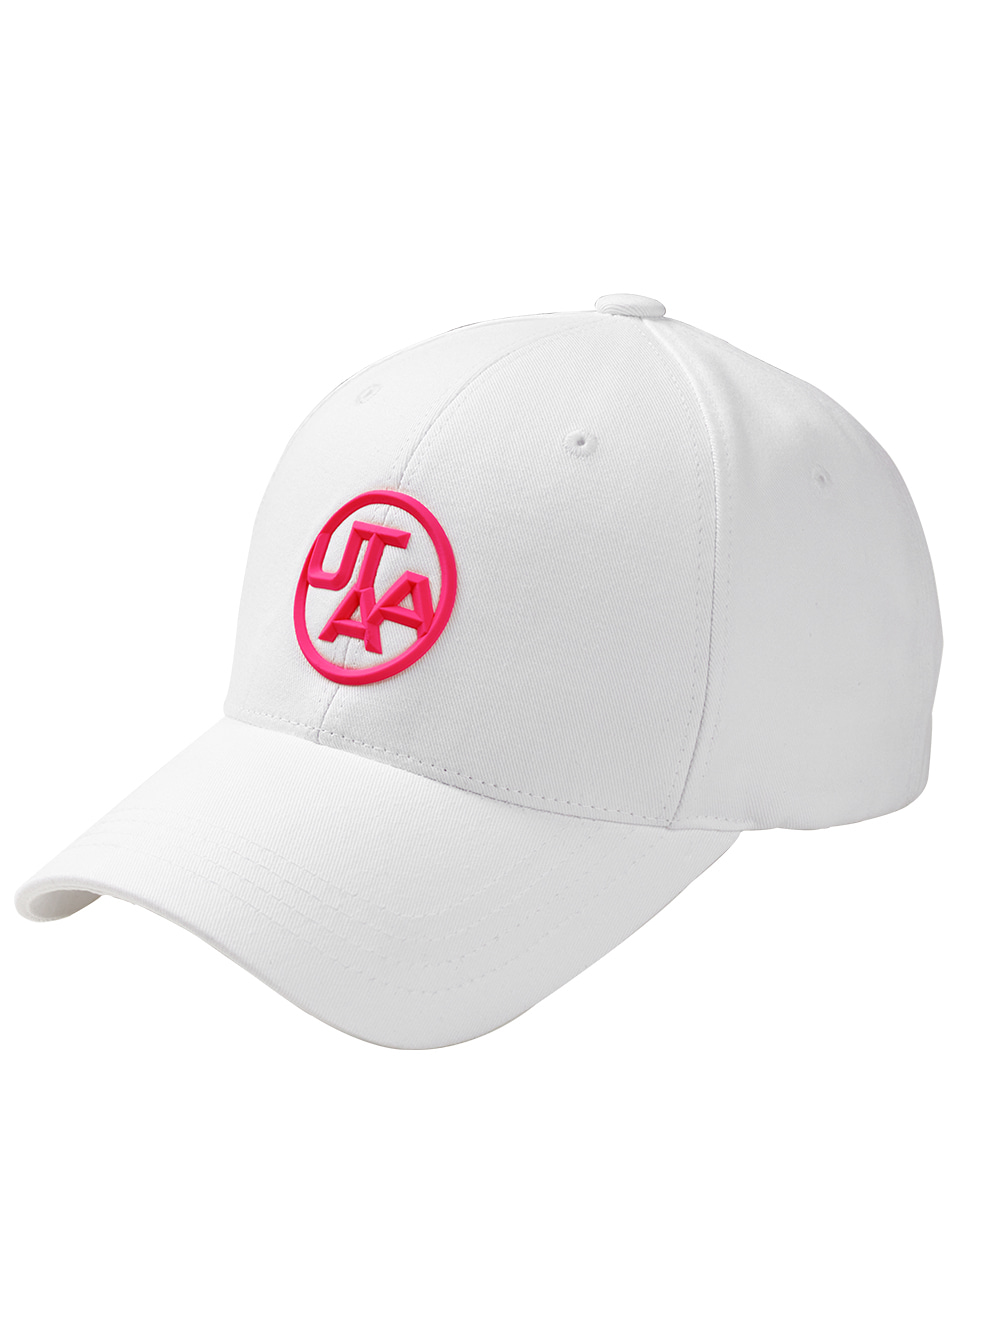 UTAA Emblem Figure White Cap : Neon Pink (UA0GCU119PK)